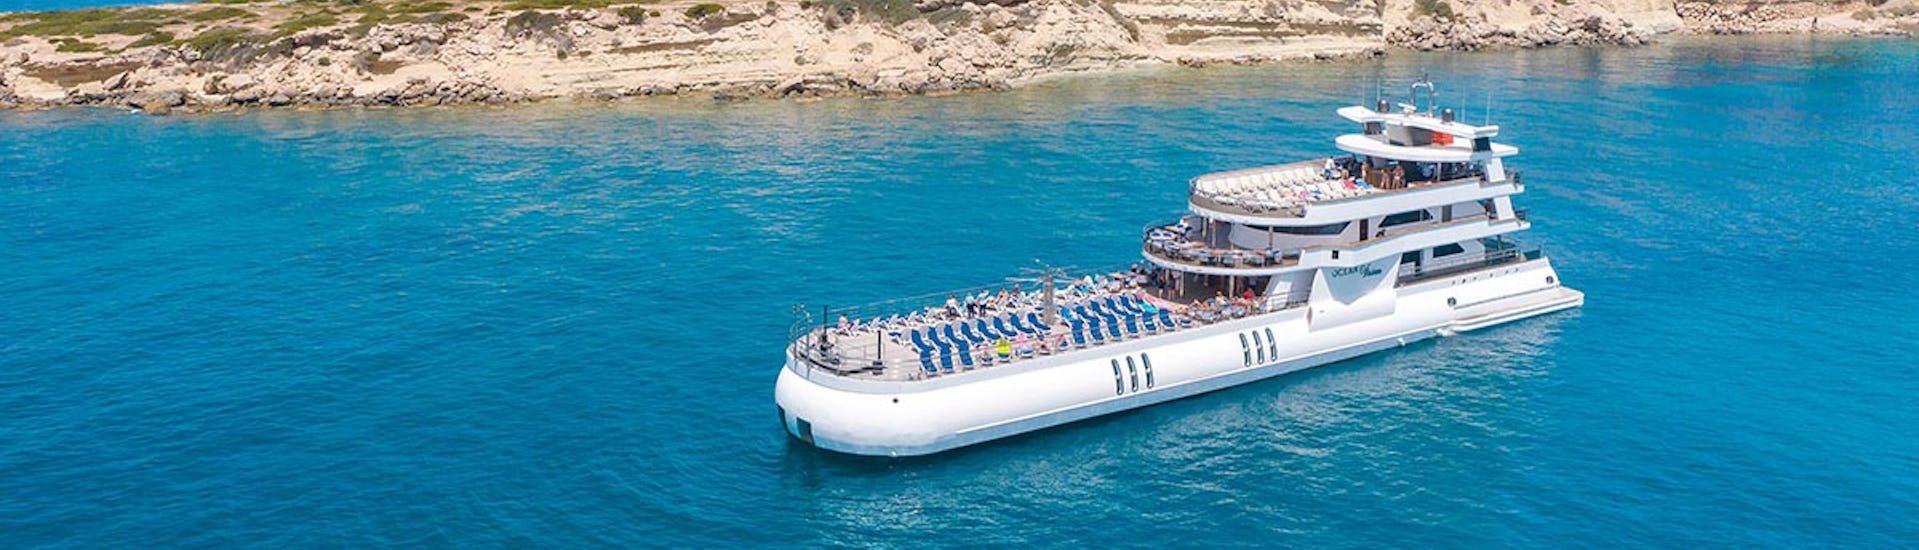 All-inclusive Bootstour zum Coral Bay ab Paphos & Latchi mit Abholservice.